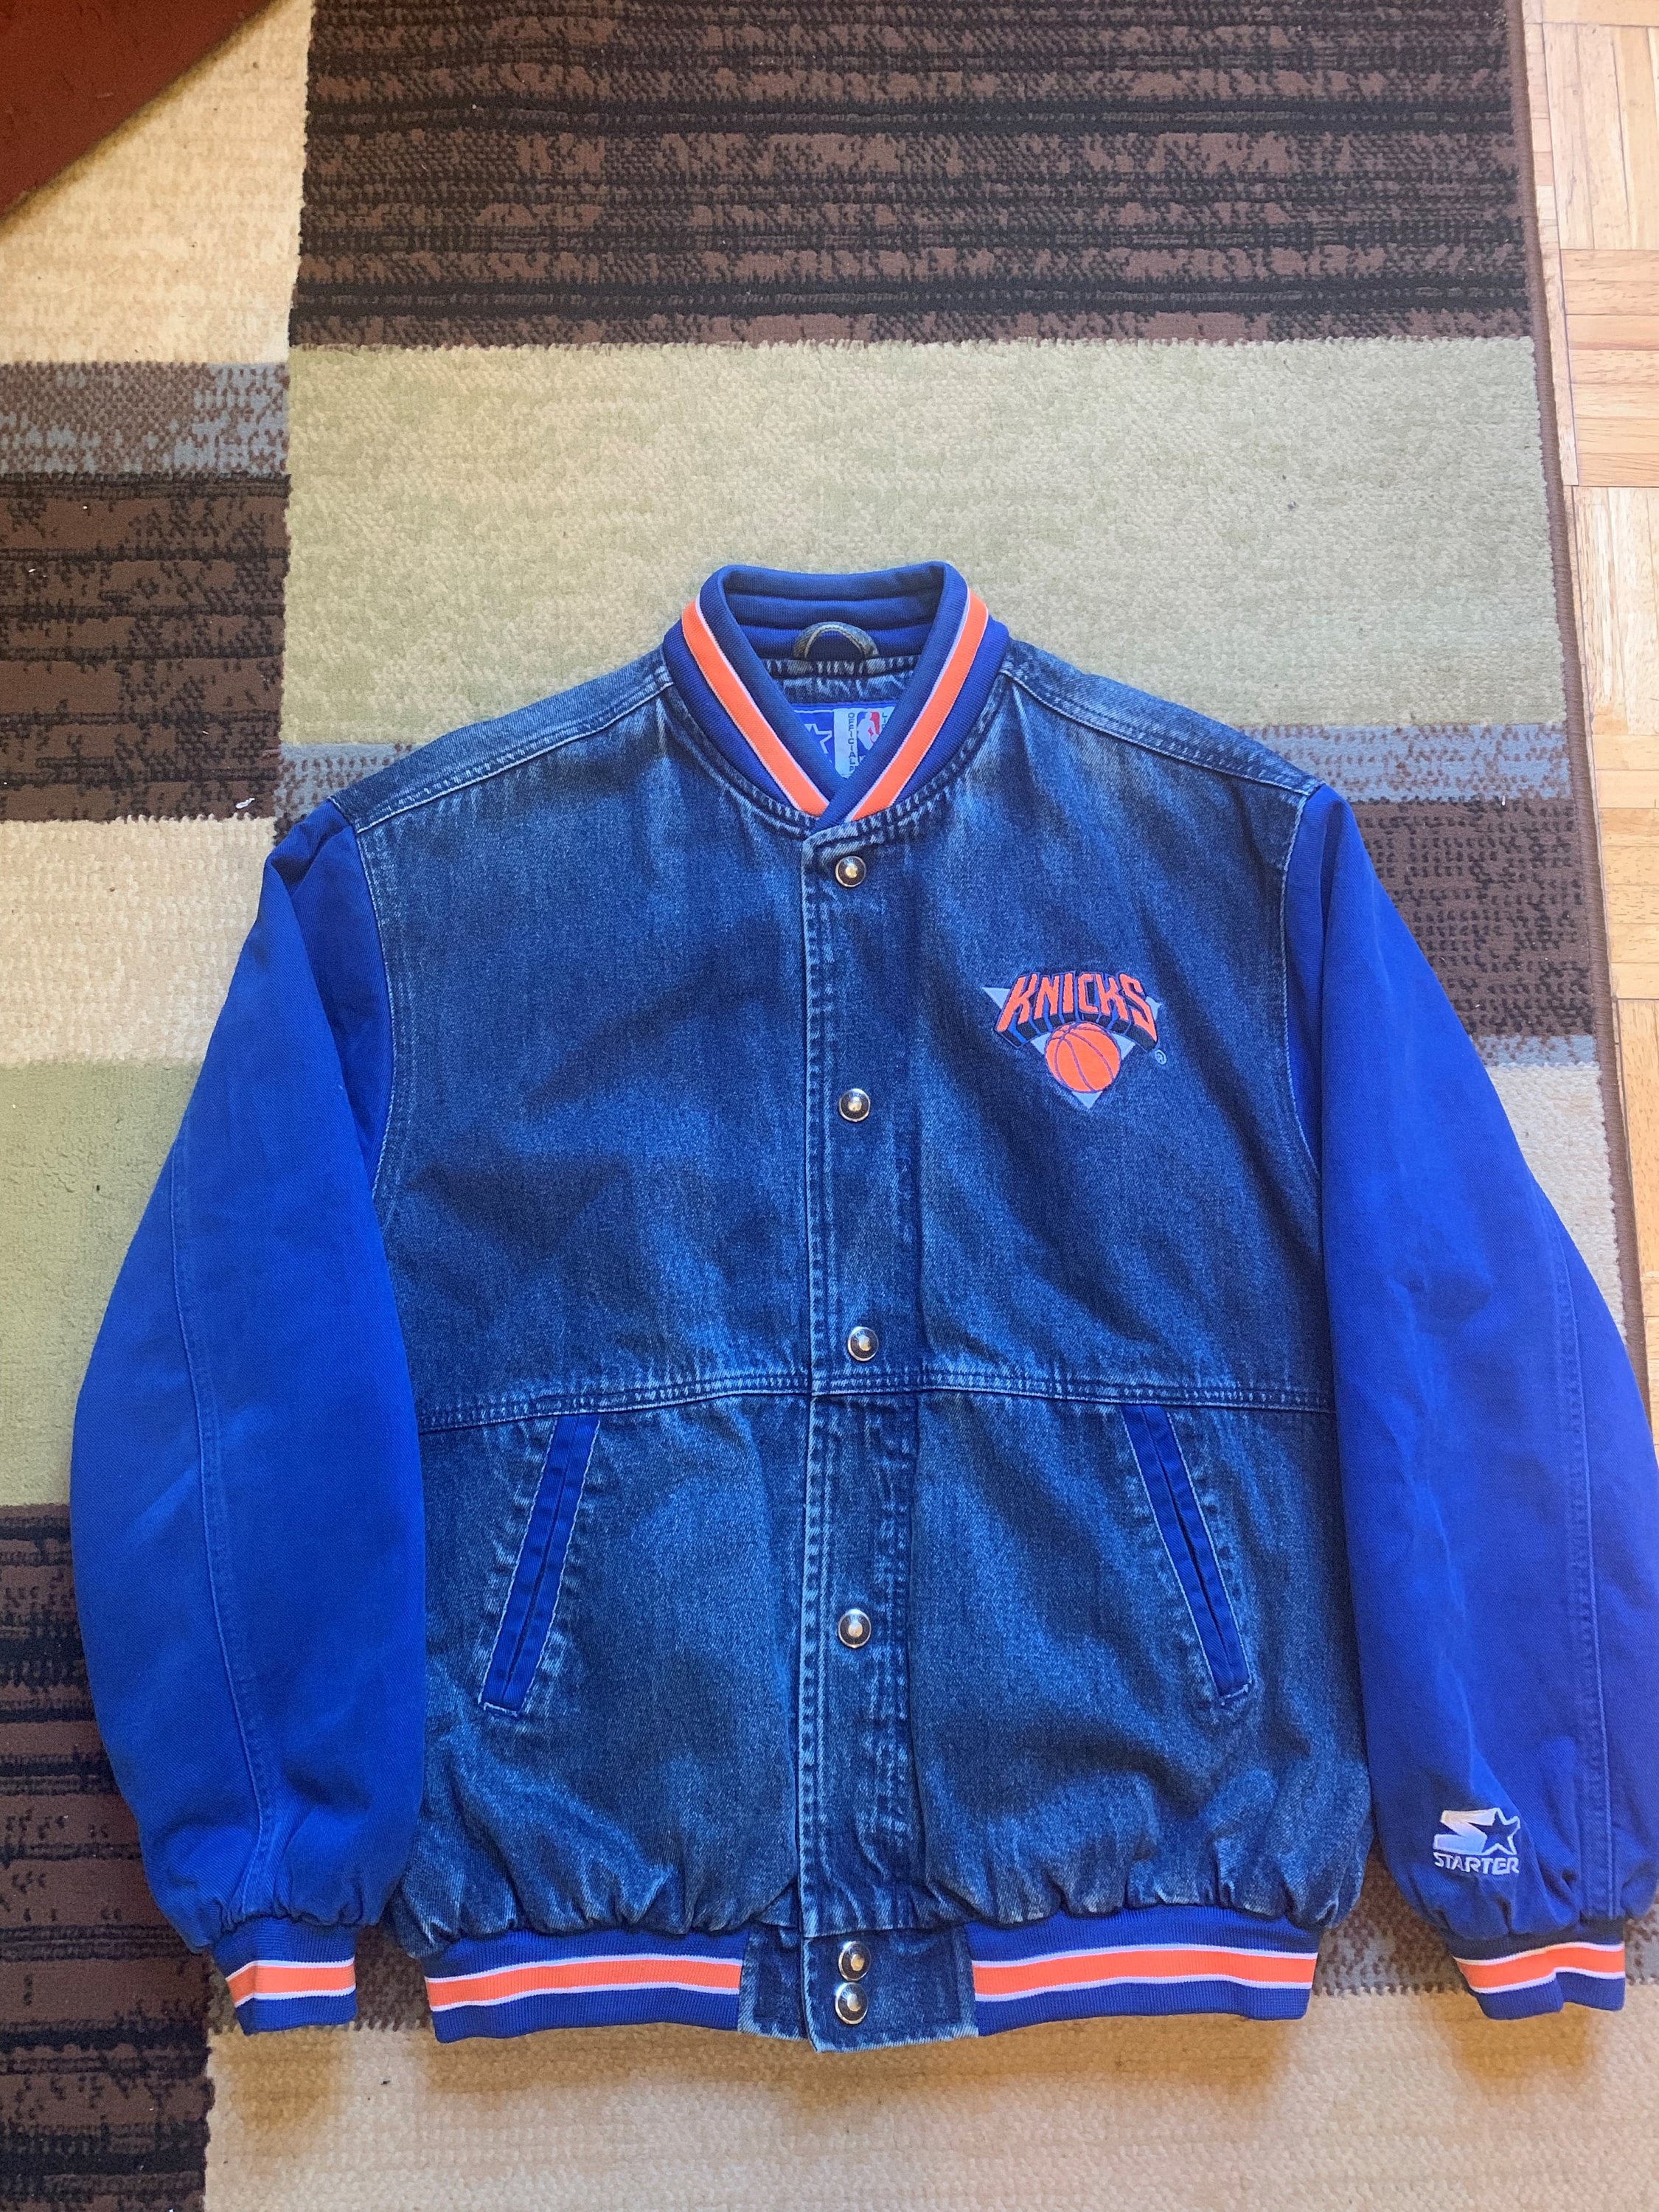 vintage knicks starter jacket